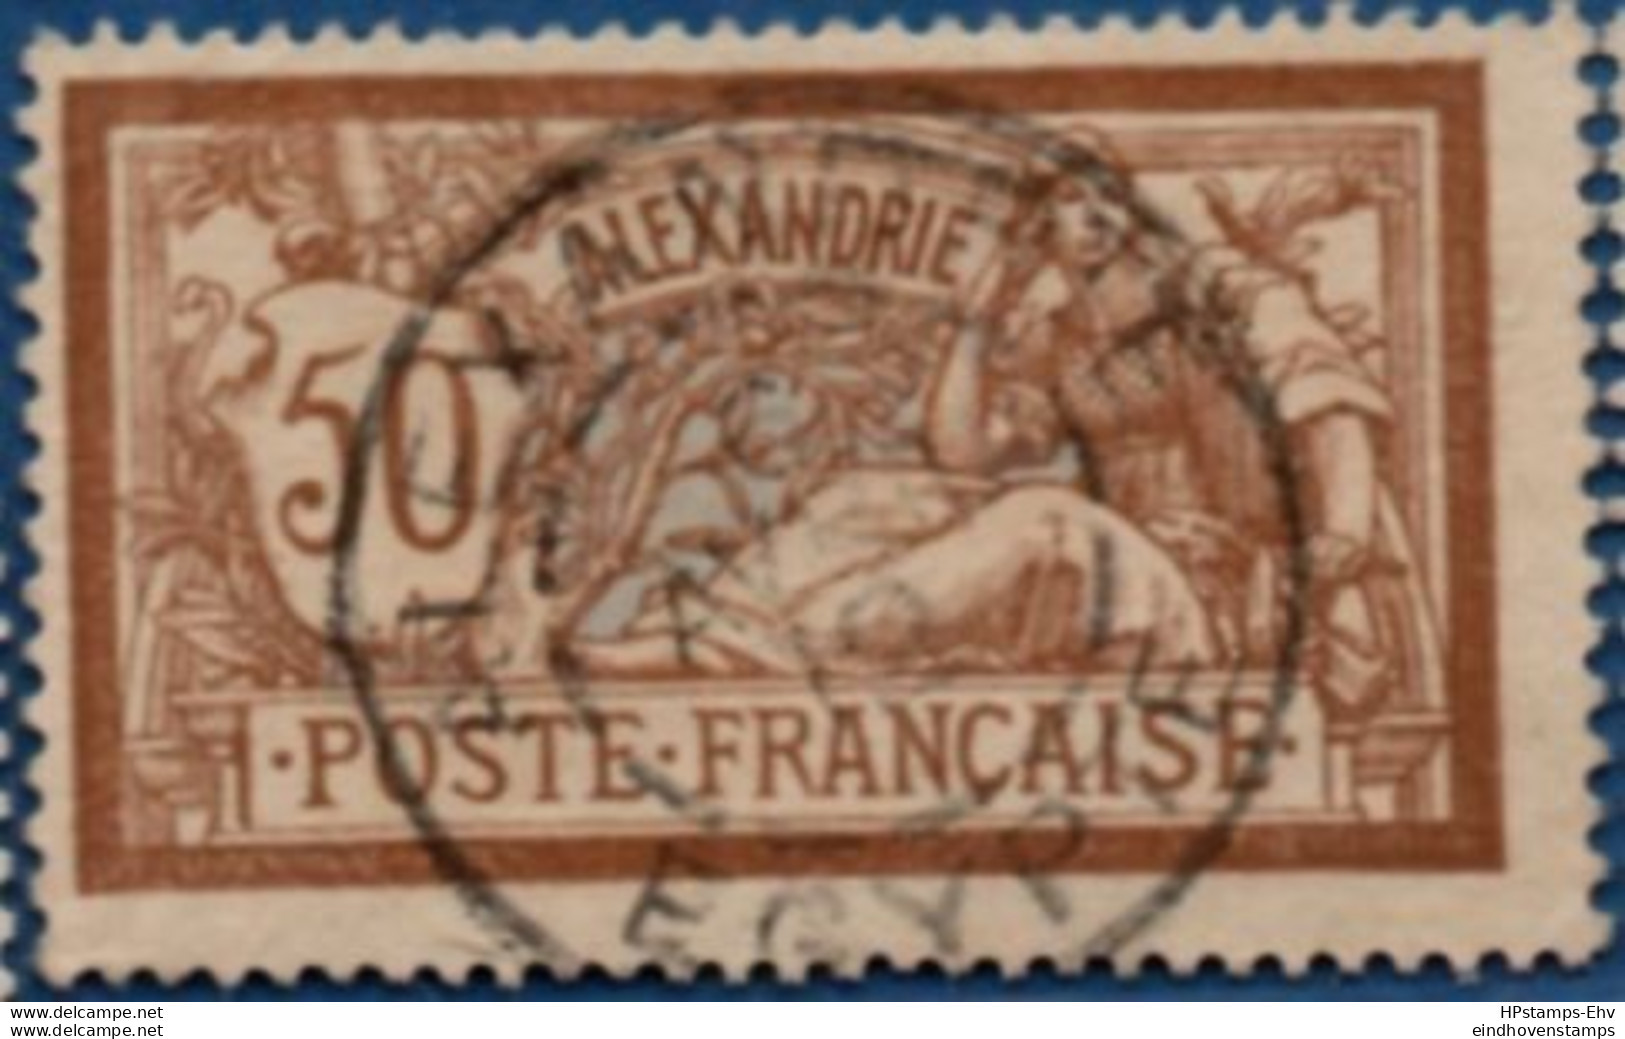 Alexandrie, 1902 50 C  Cancelled 1 Stamp 2104.1237 - Oblitérés